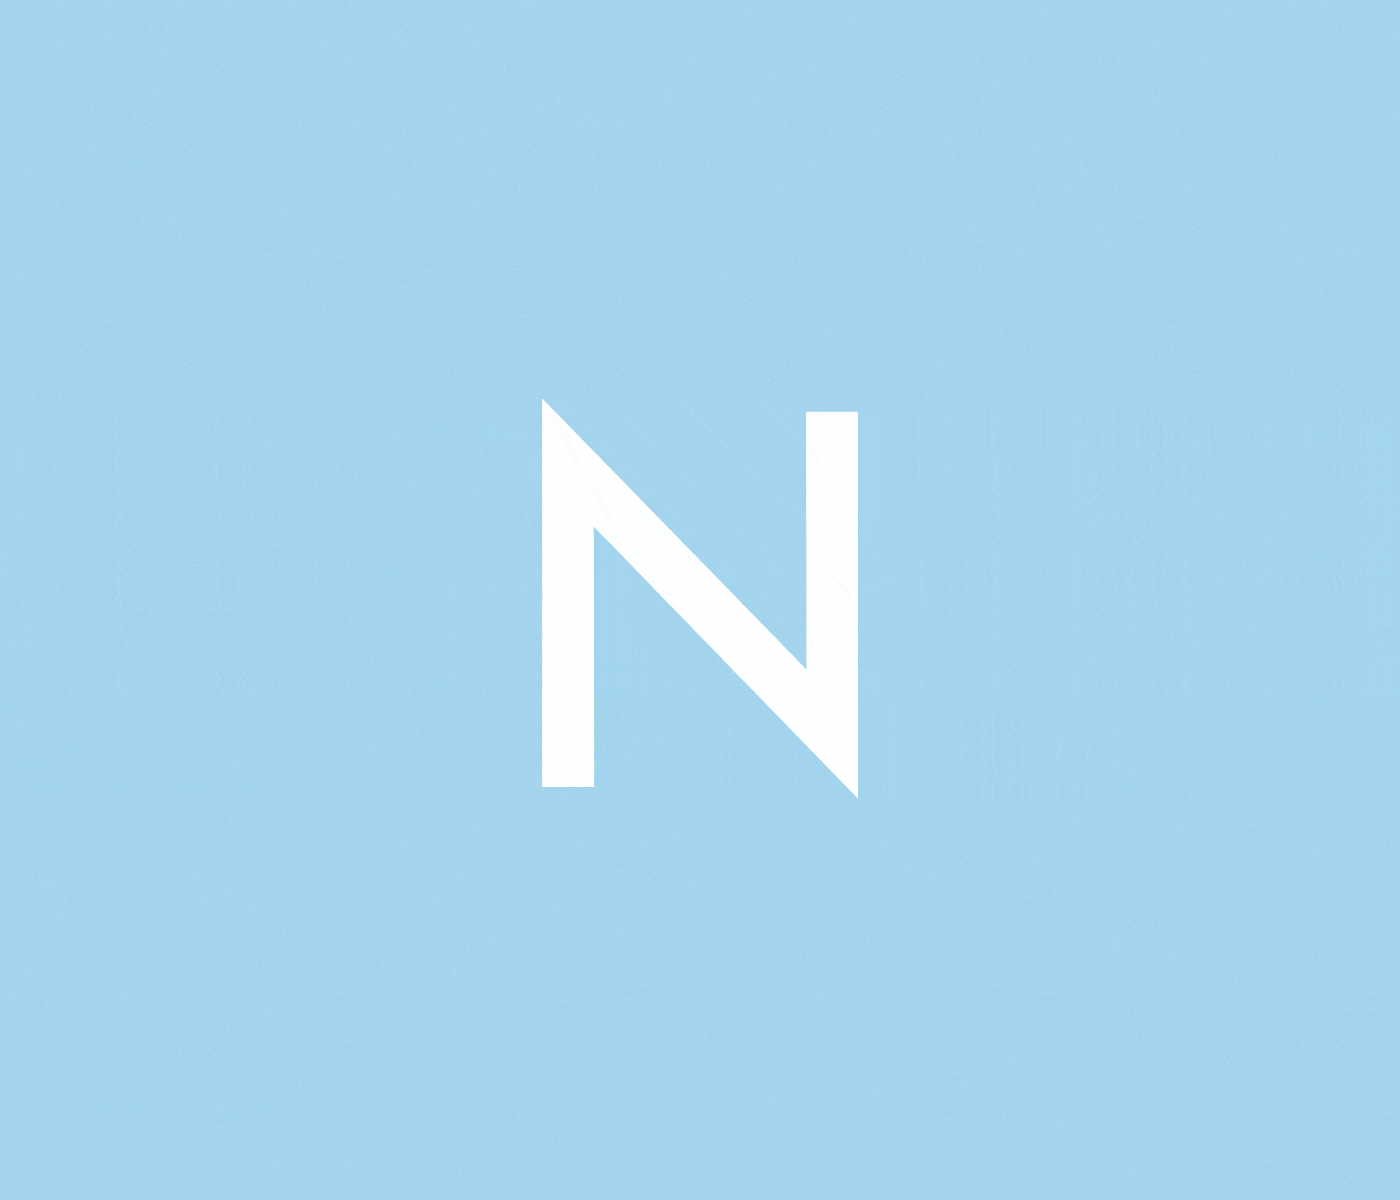 版式排版设计英文无衬线字体 Noir Free Typeface插图(5)